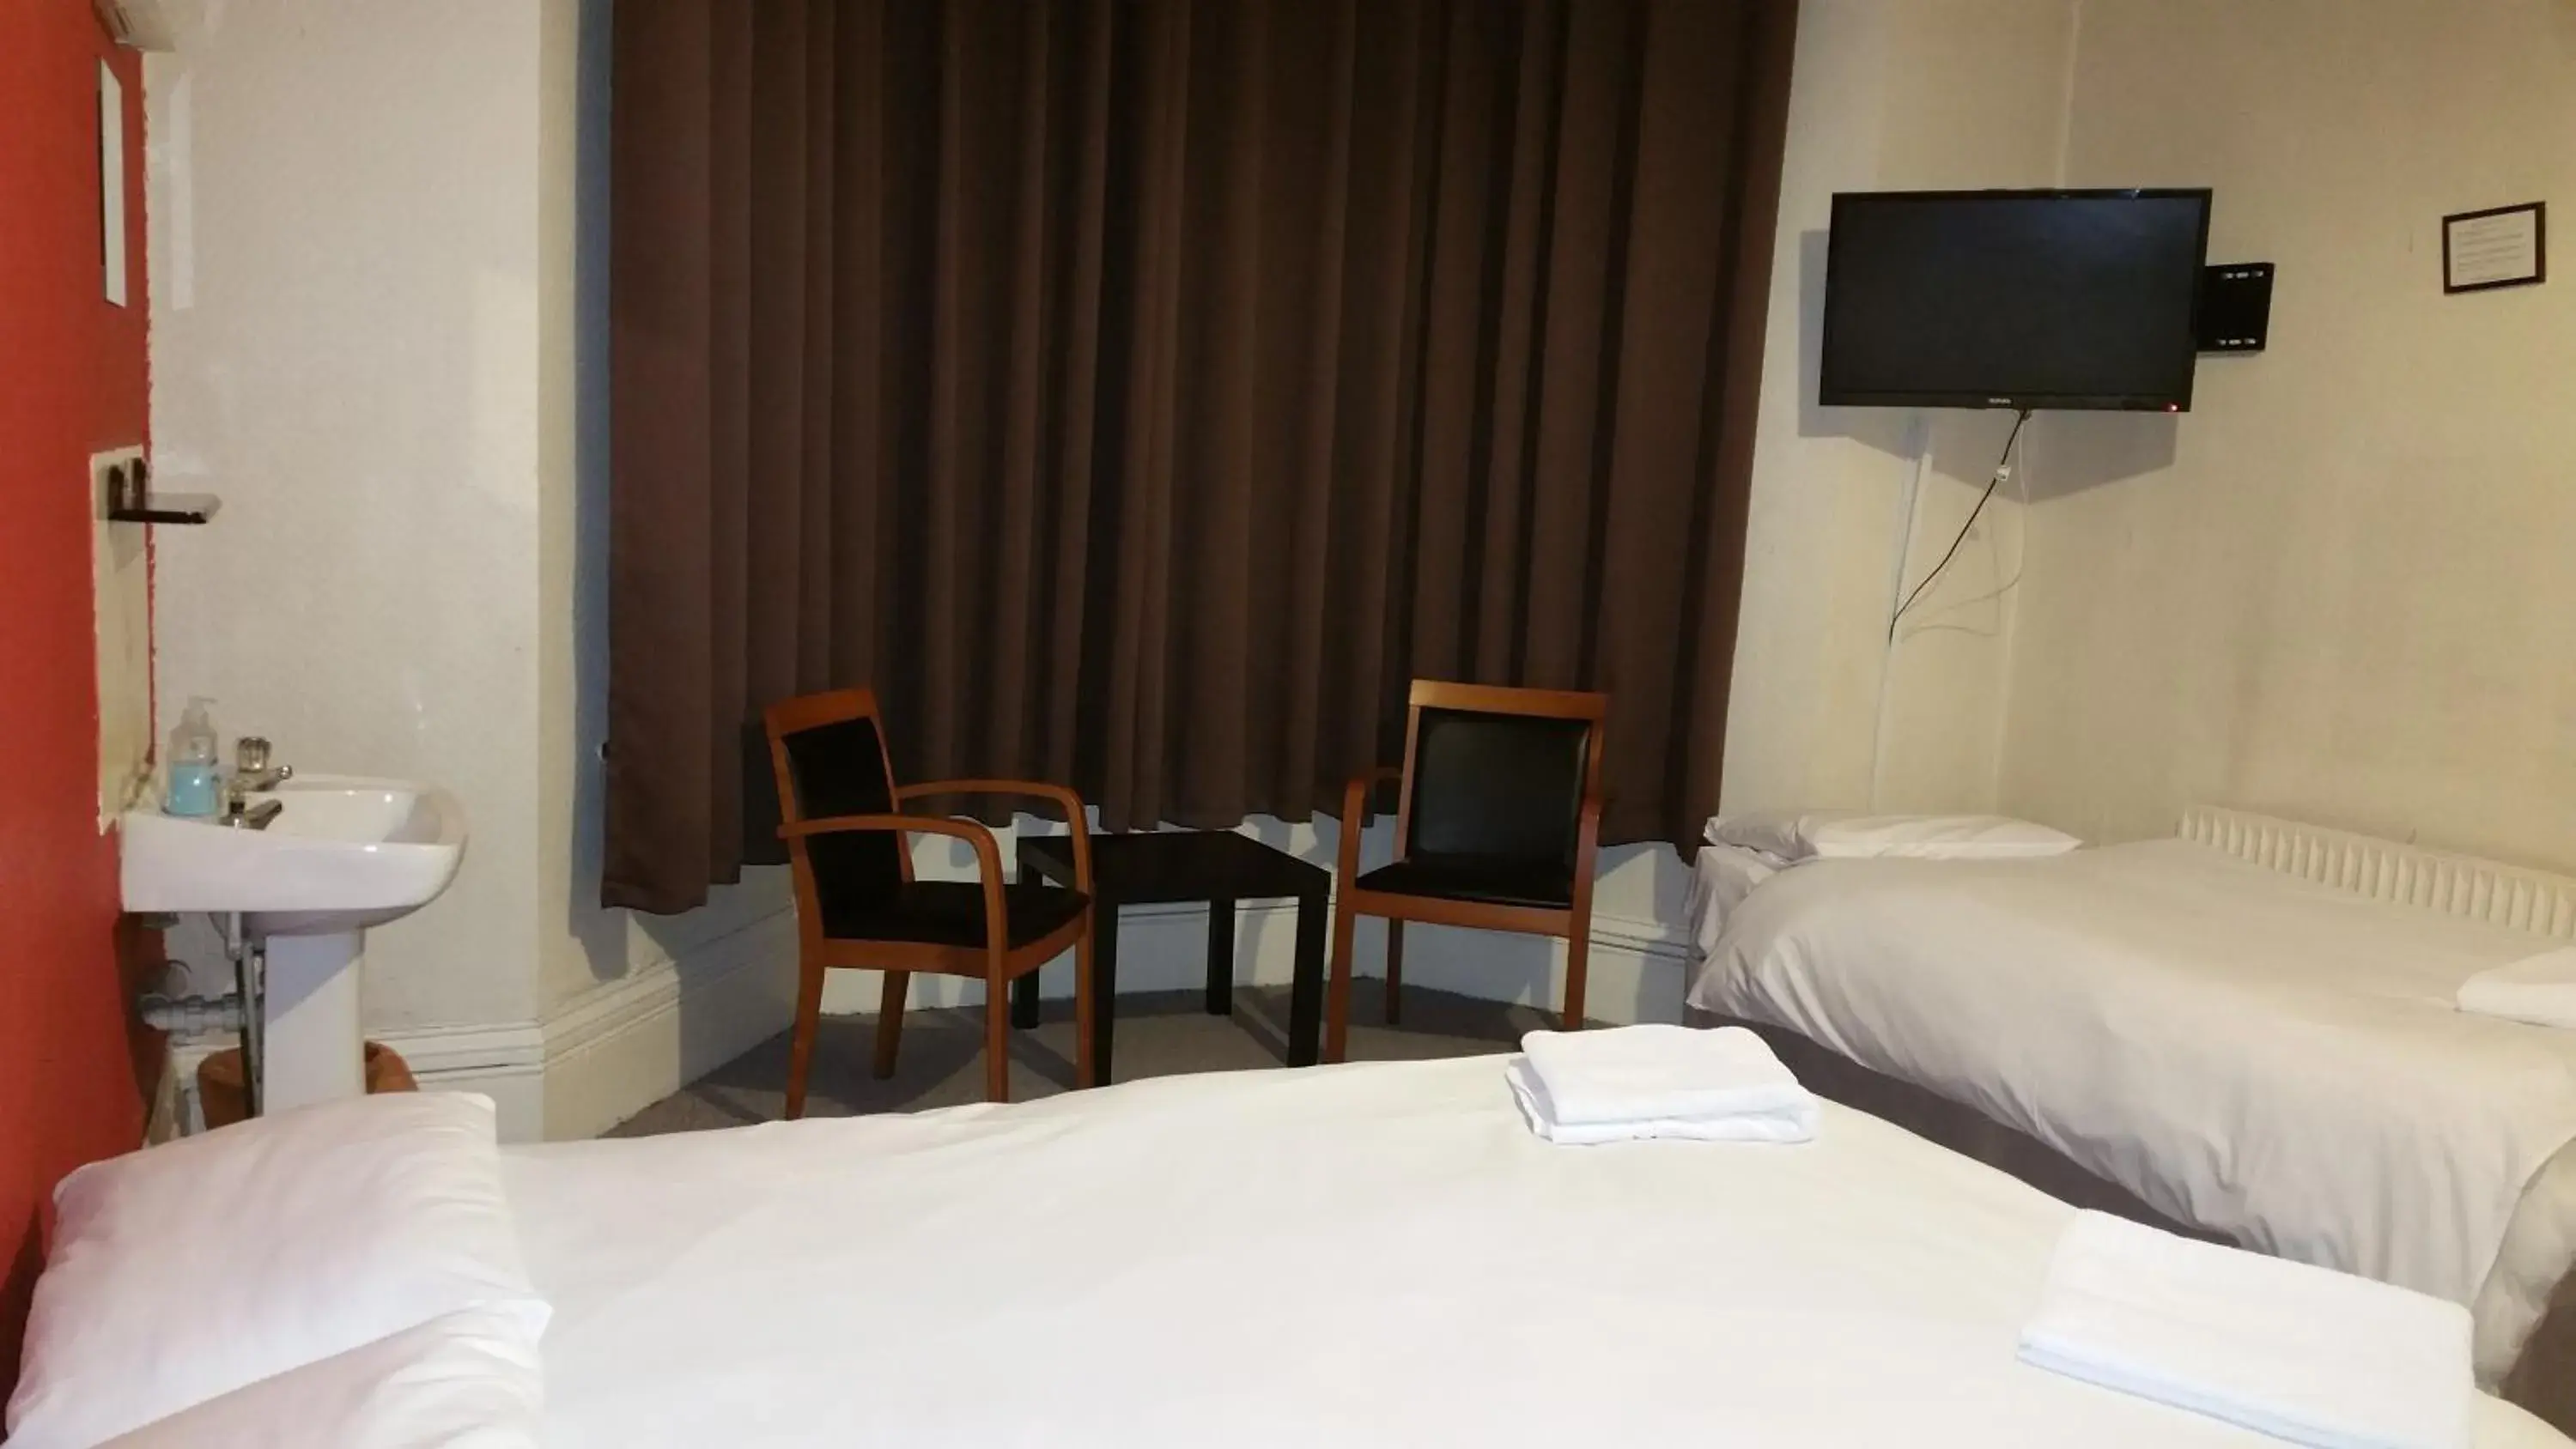 Bed in Best Inn Hotel